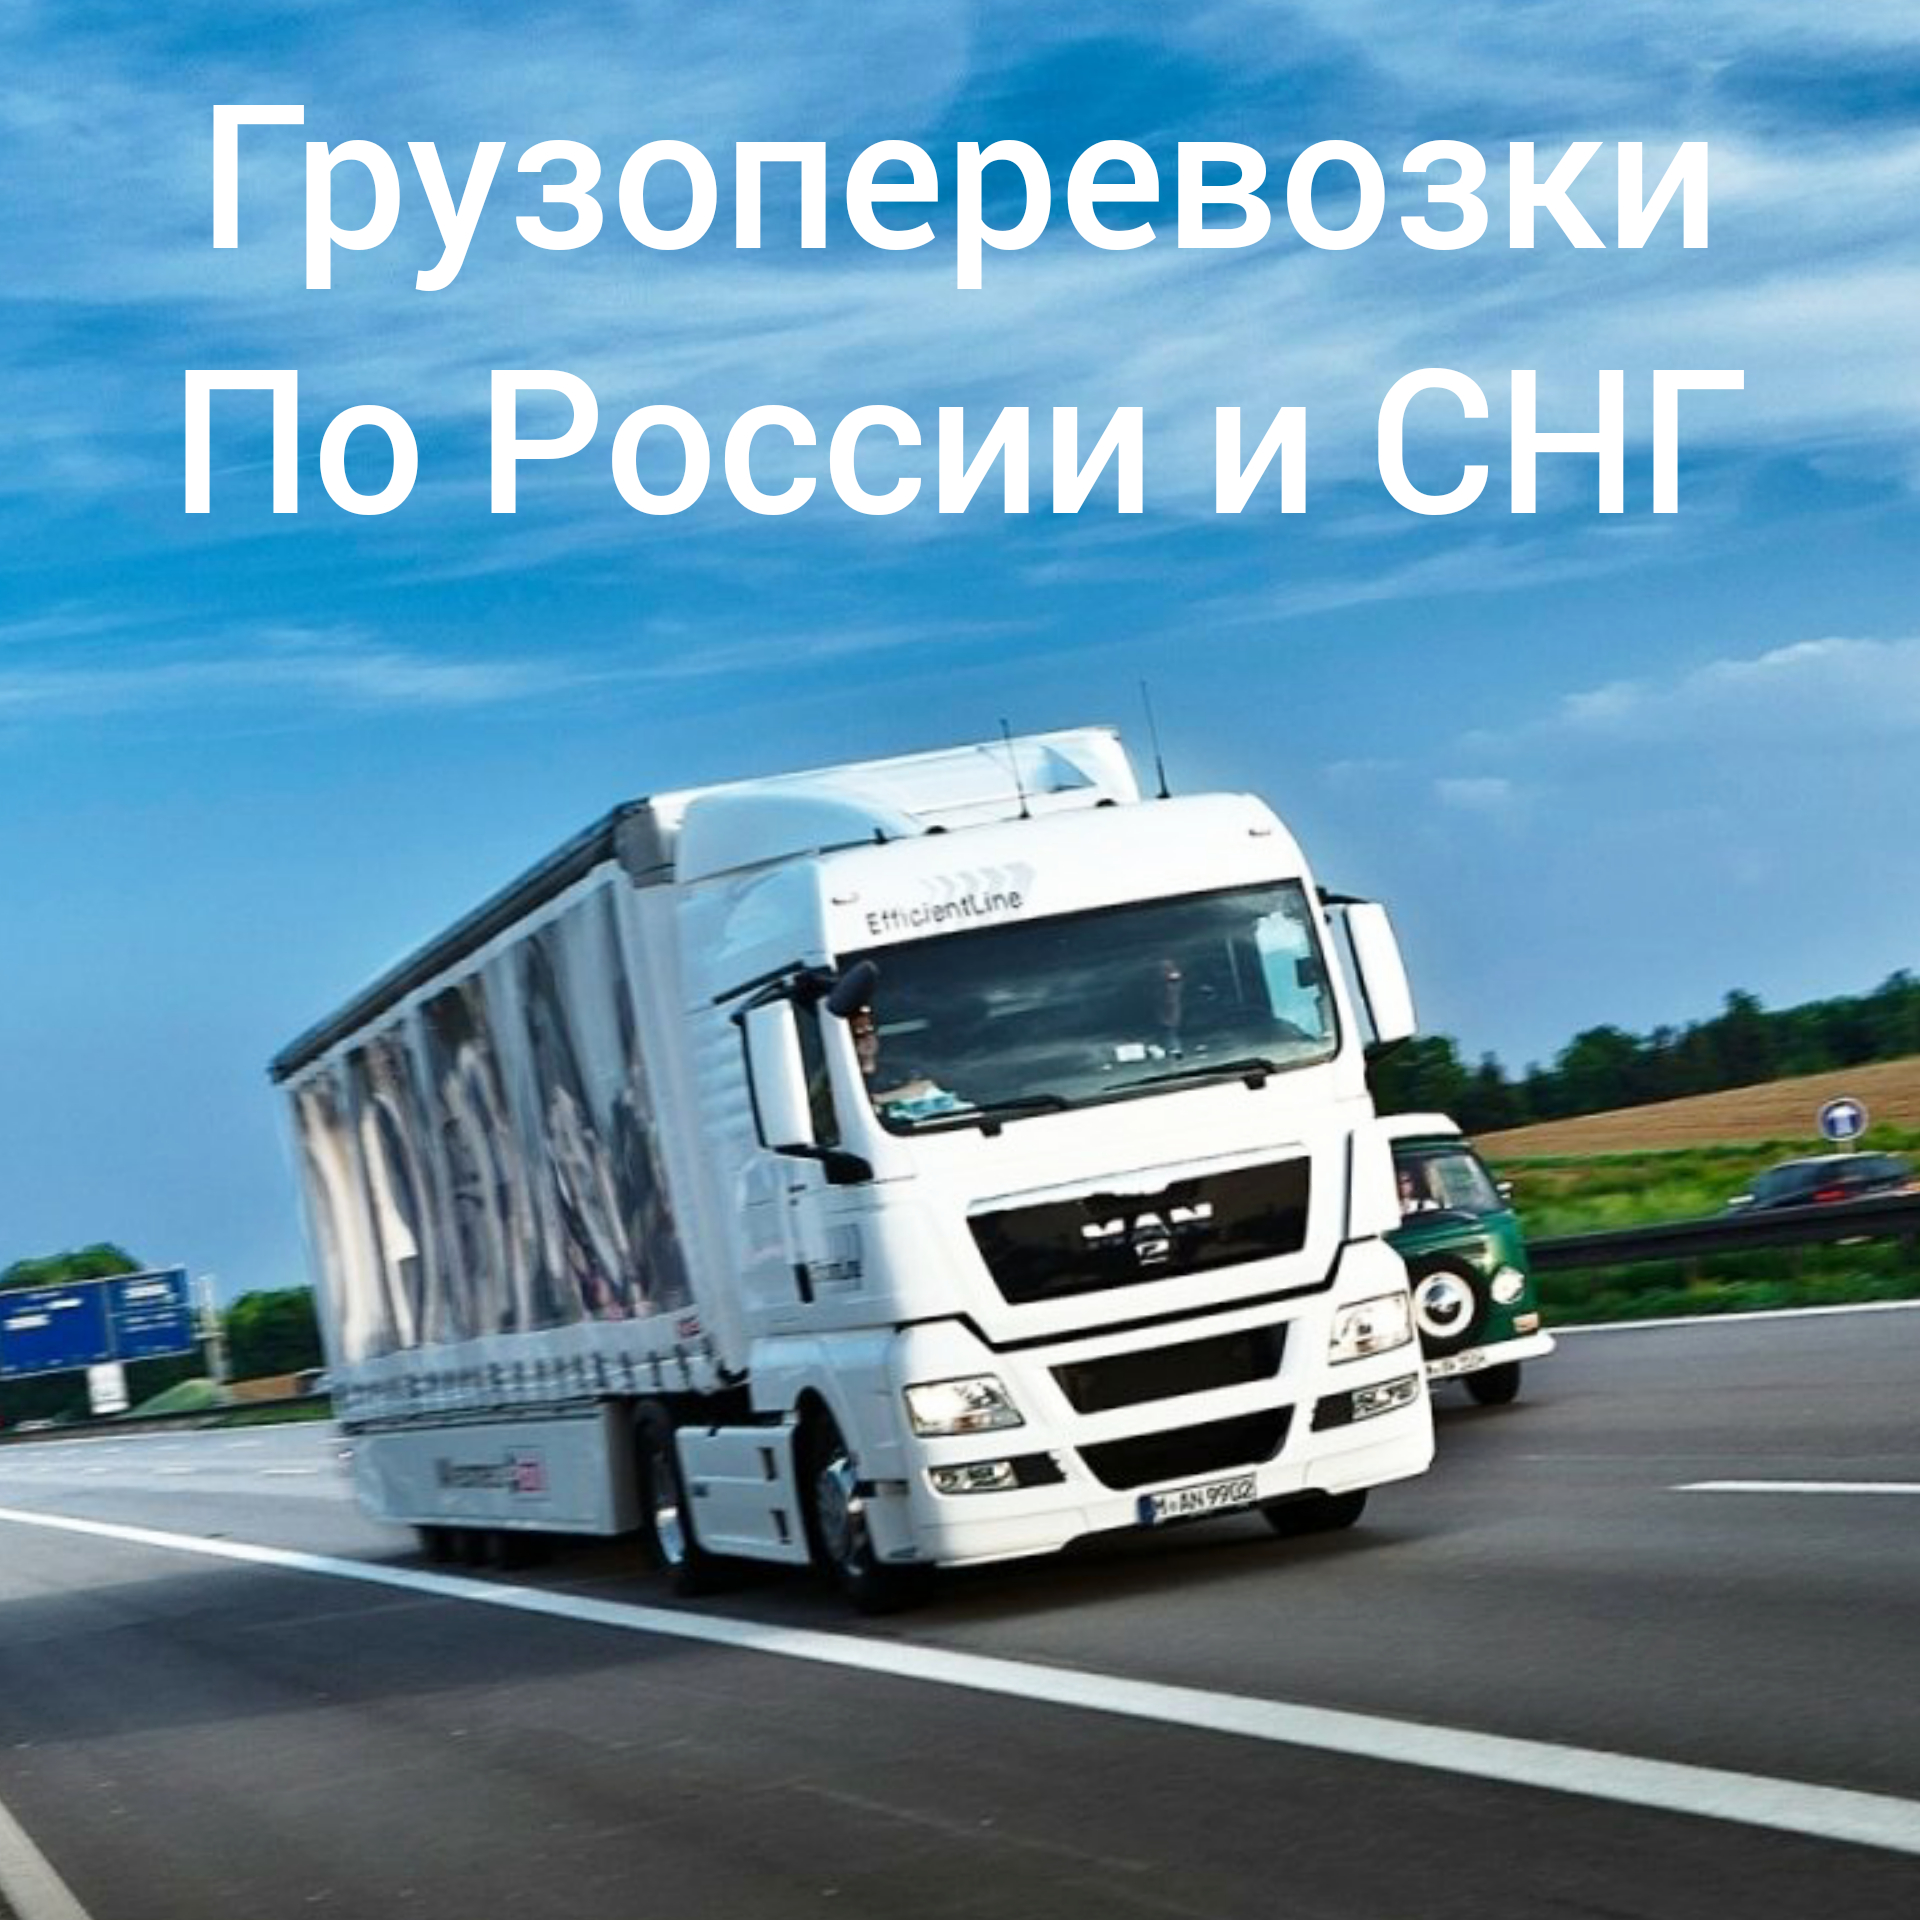 грузоперевозки по россии транспортные компании цена Петербург